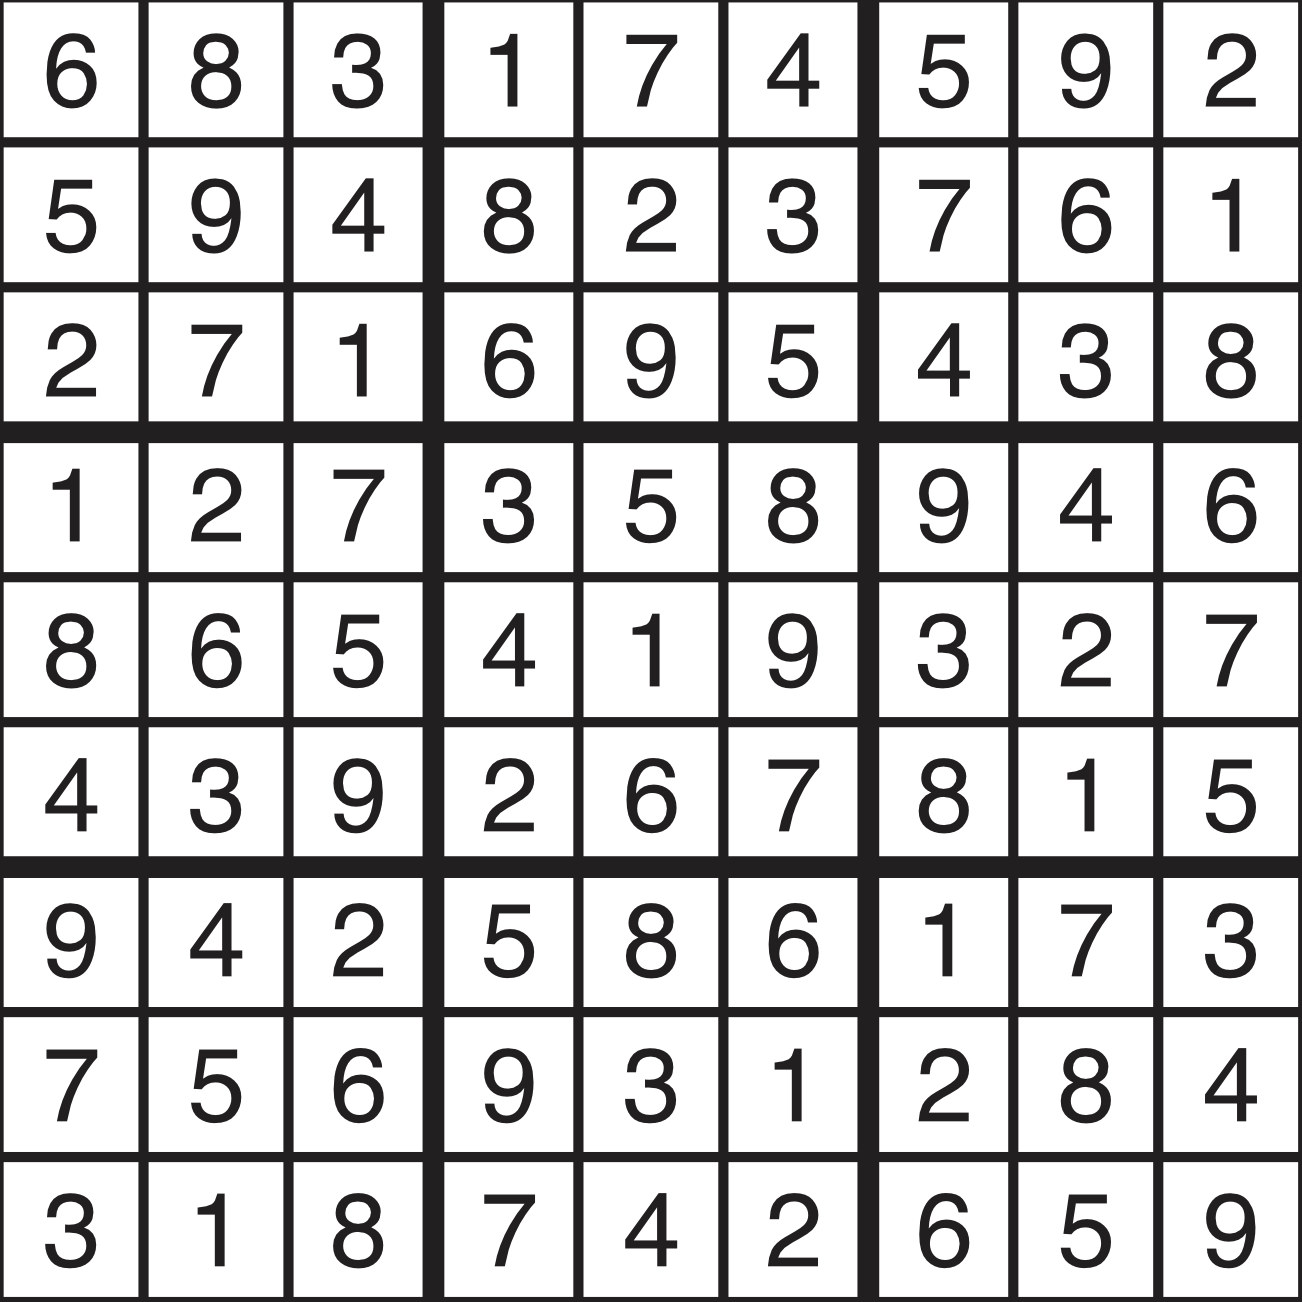 Sudoku | June 12 Solution